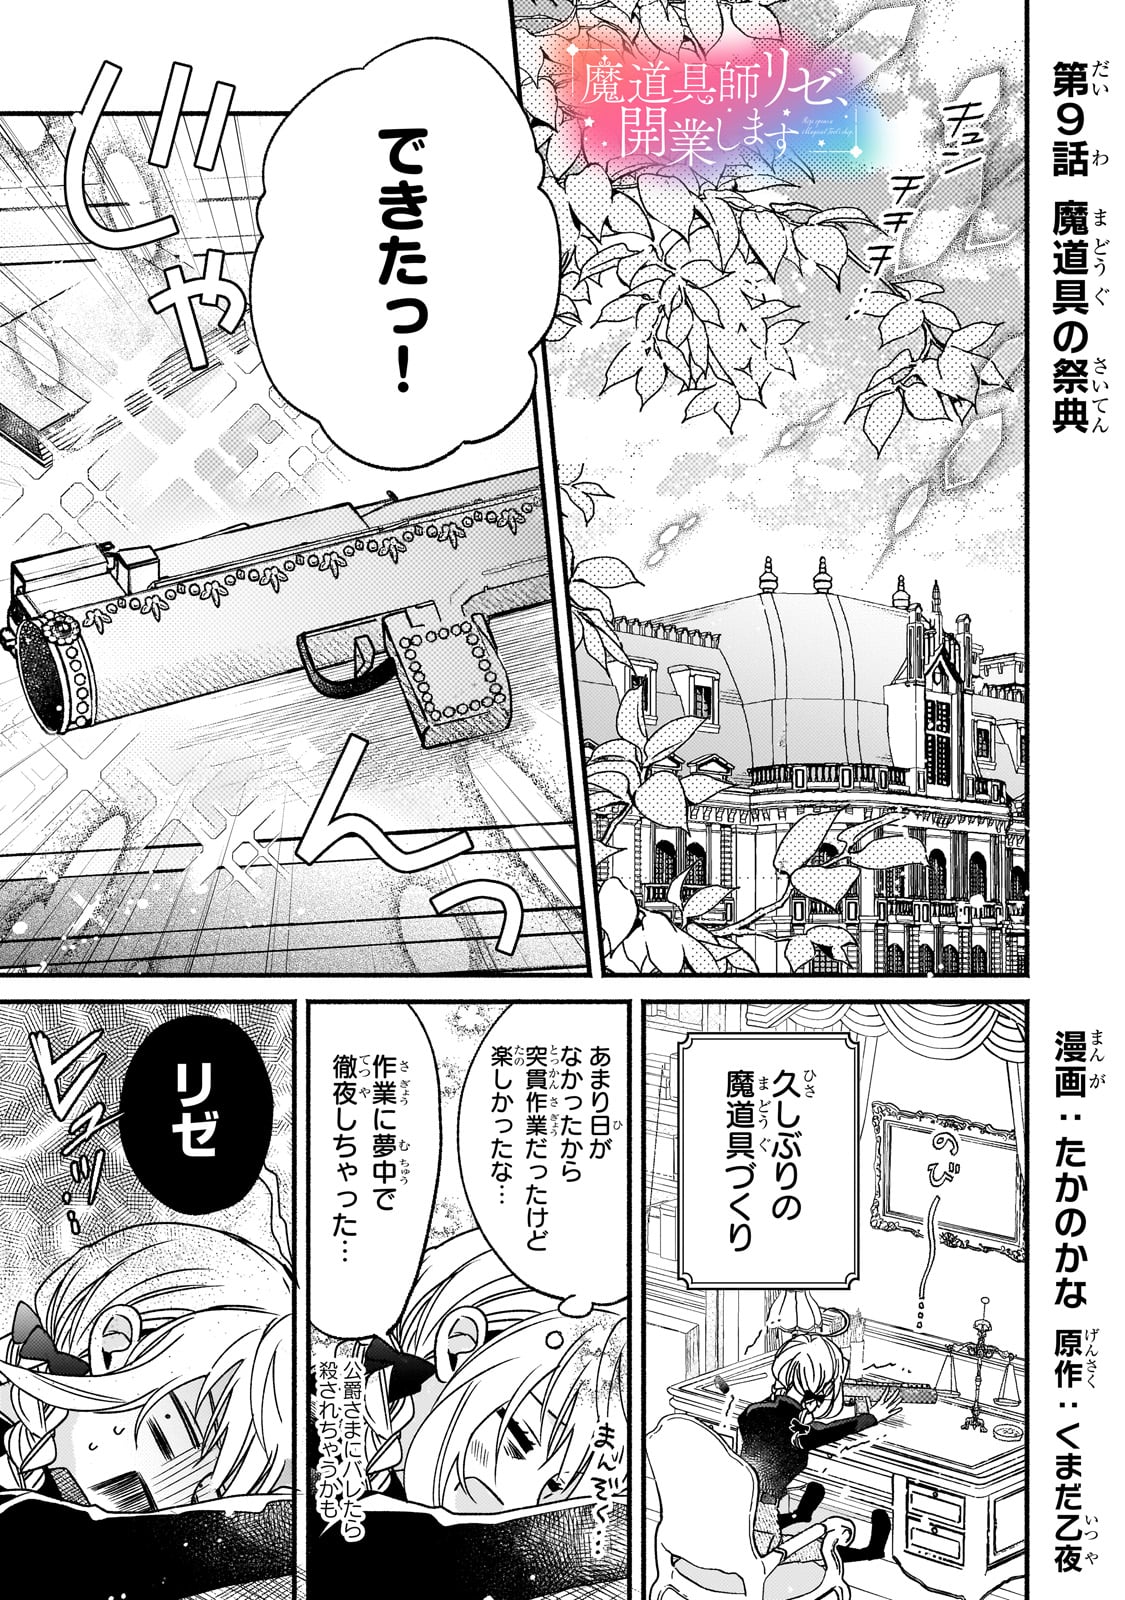 Madougushi Rize, Kaigyoushimasu - Chapter 9 - Page 1